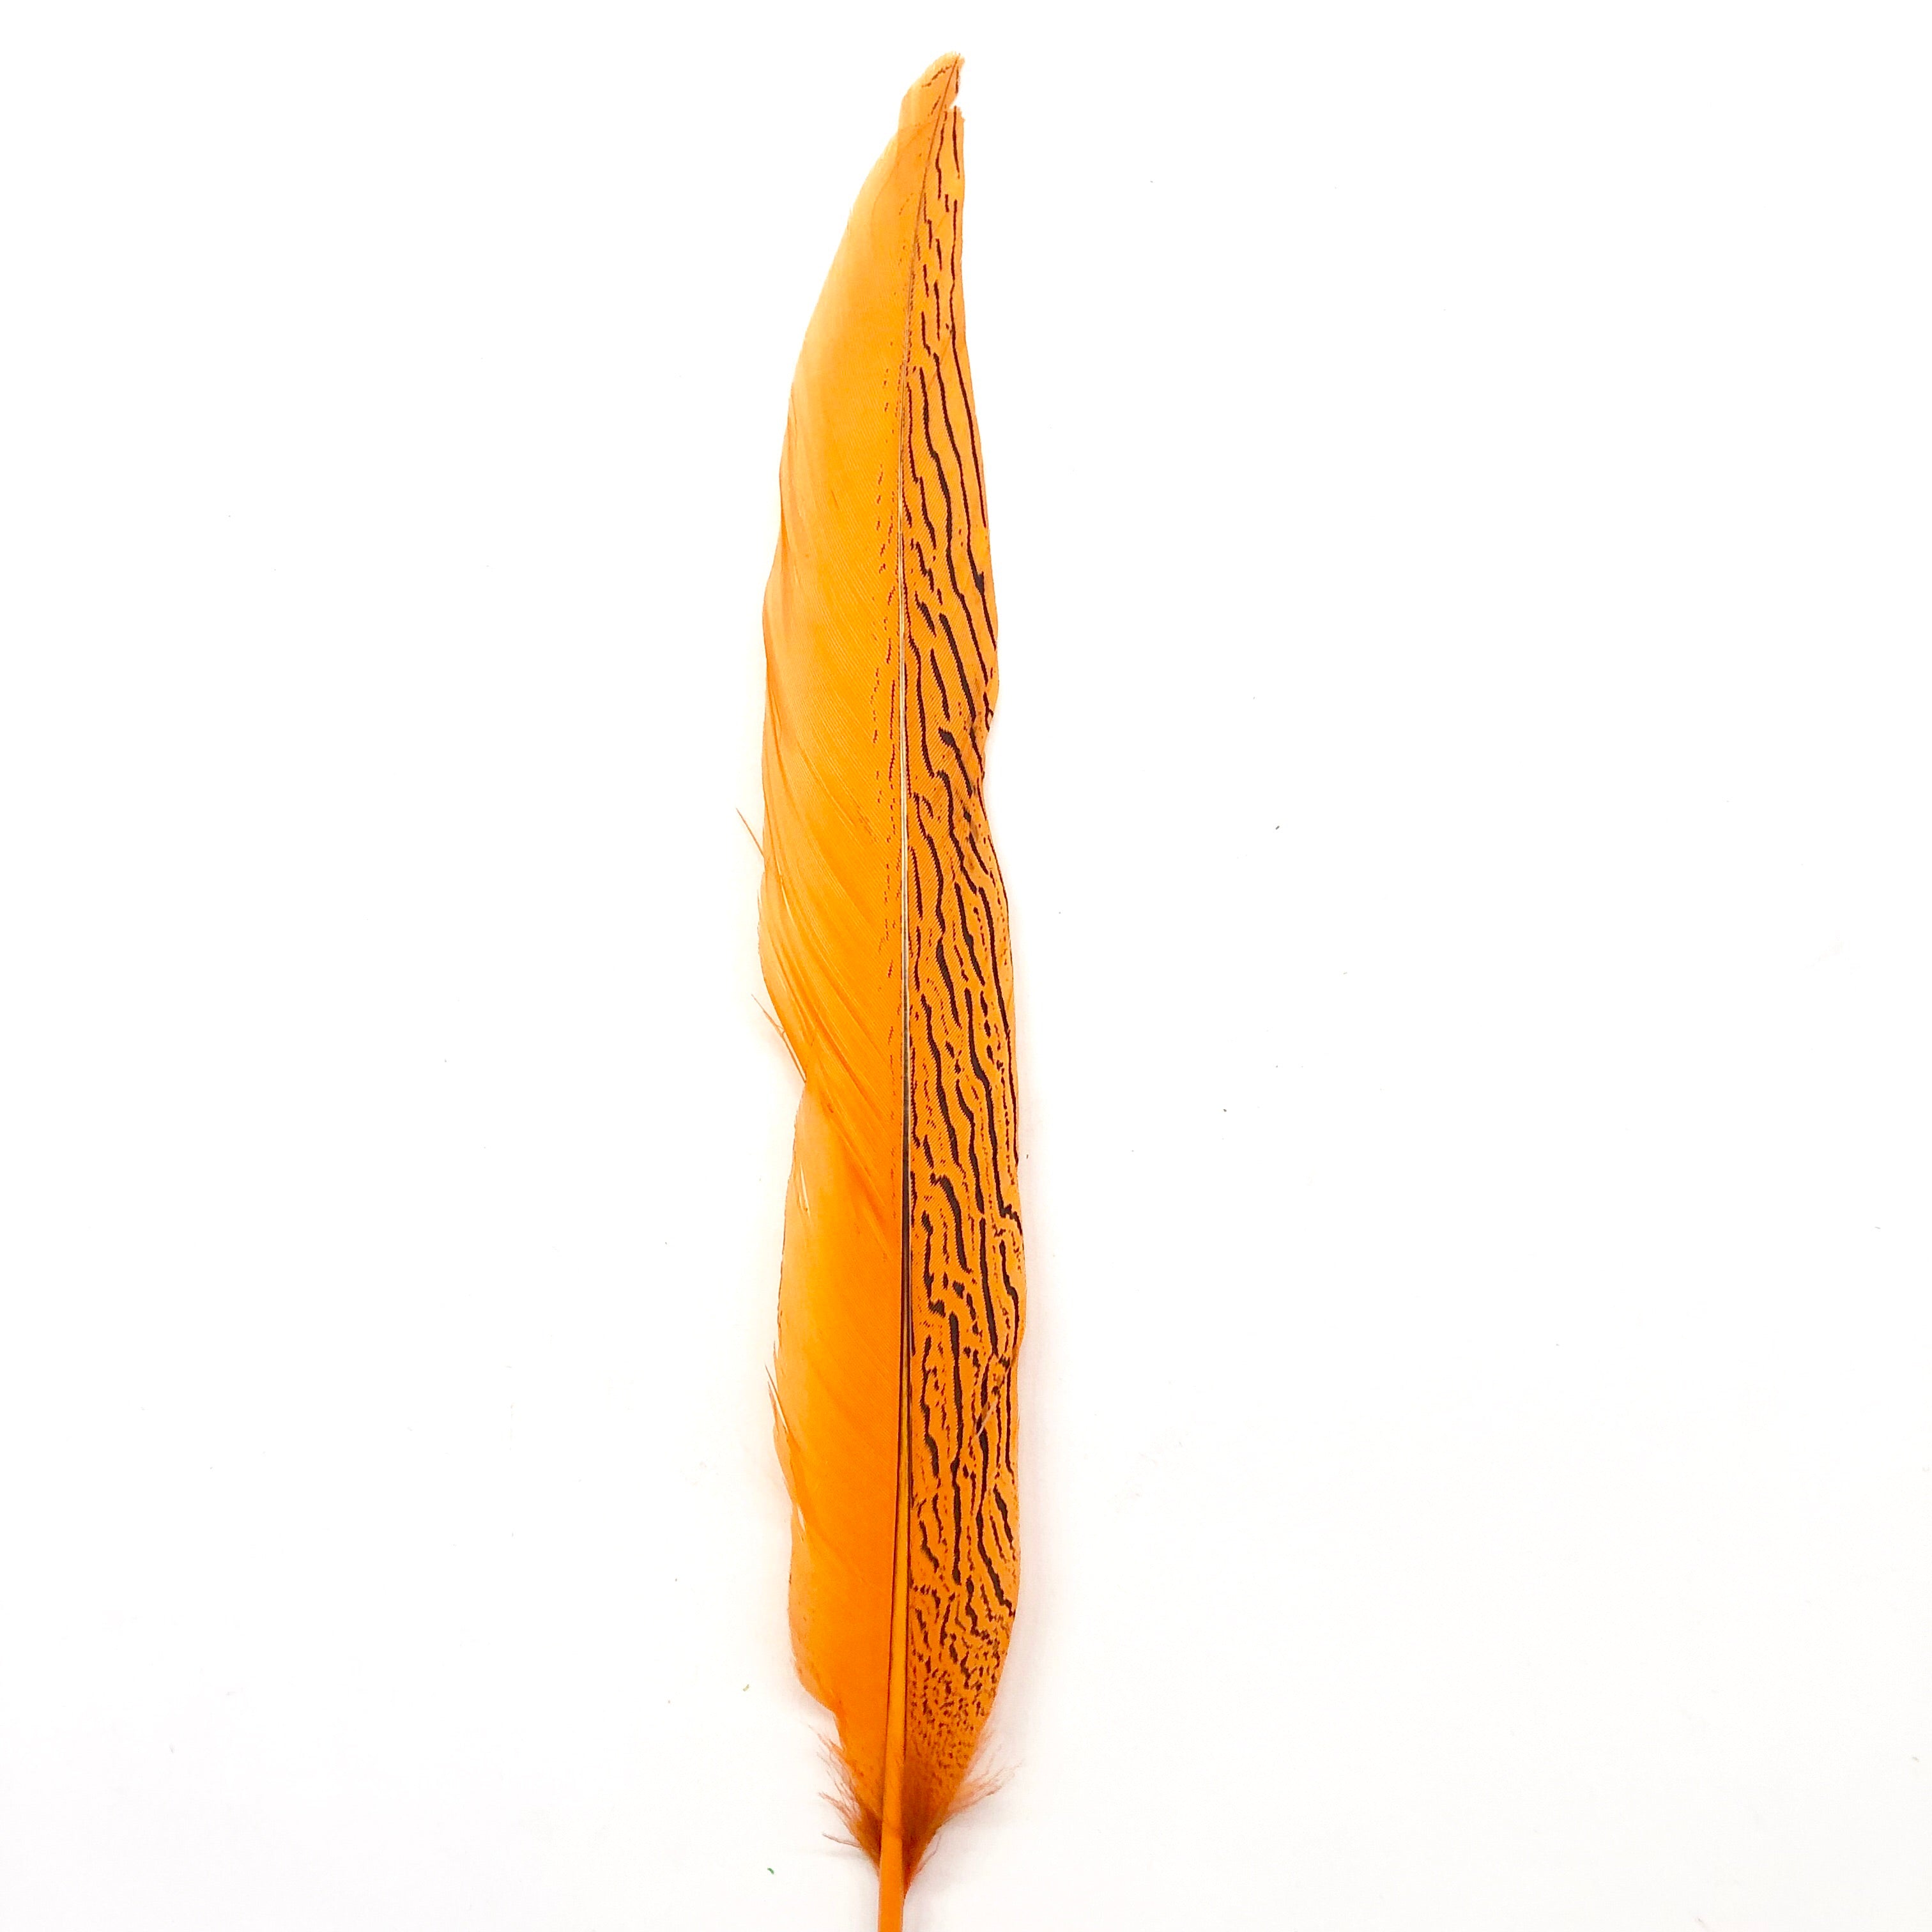 6" to 10" Silver Pheasant Tail Feather - Orange